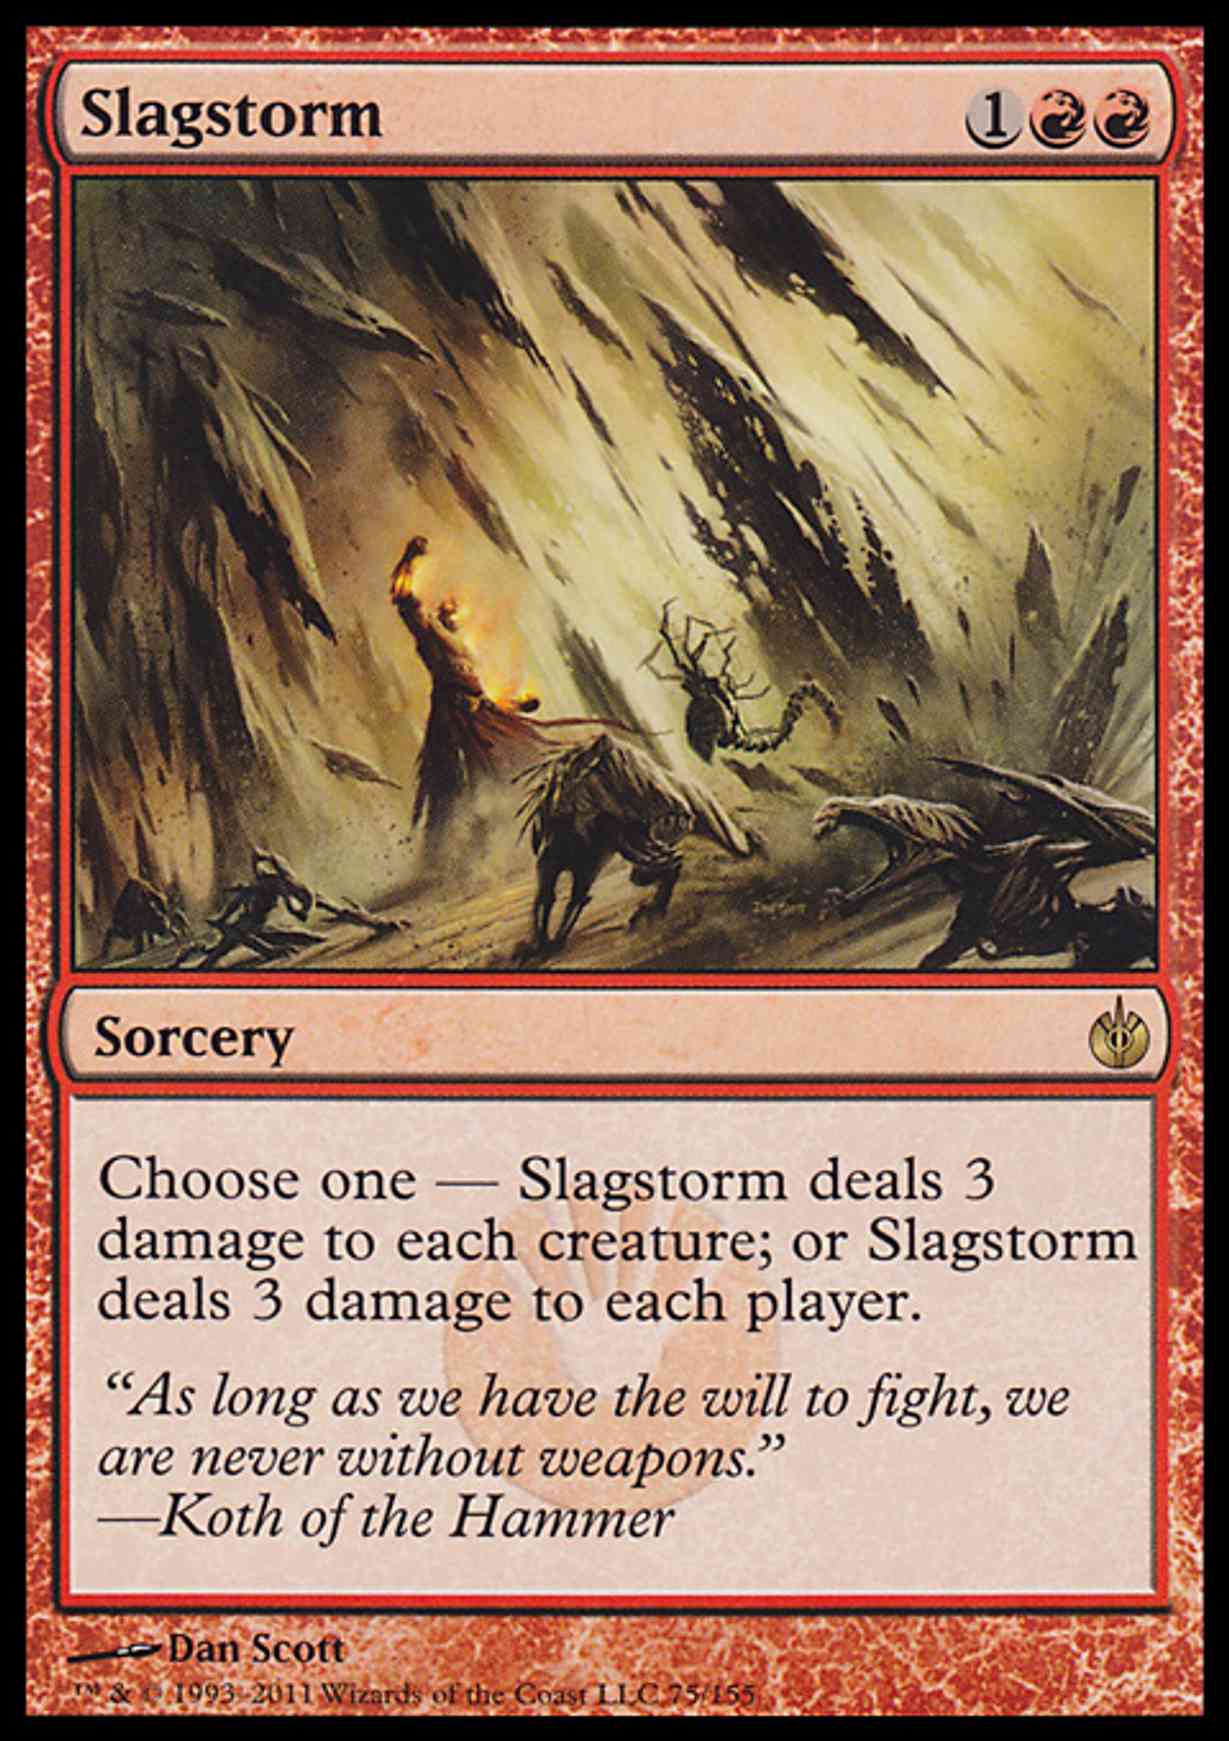 Slagstorm magic card front